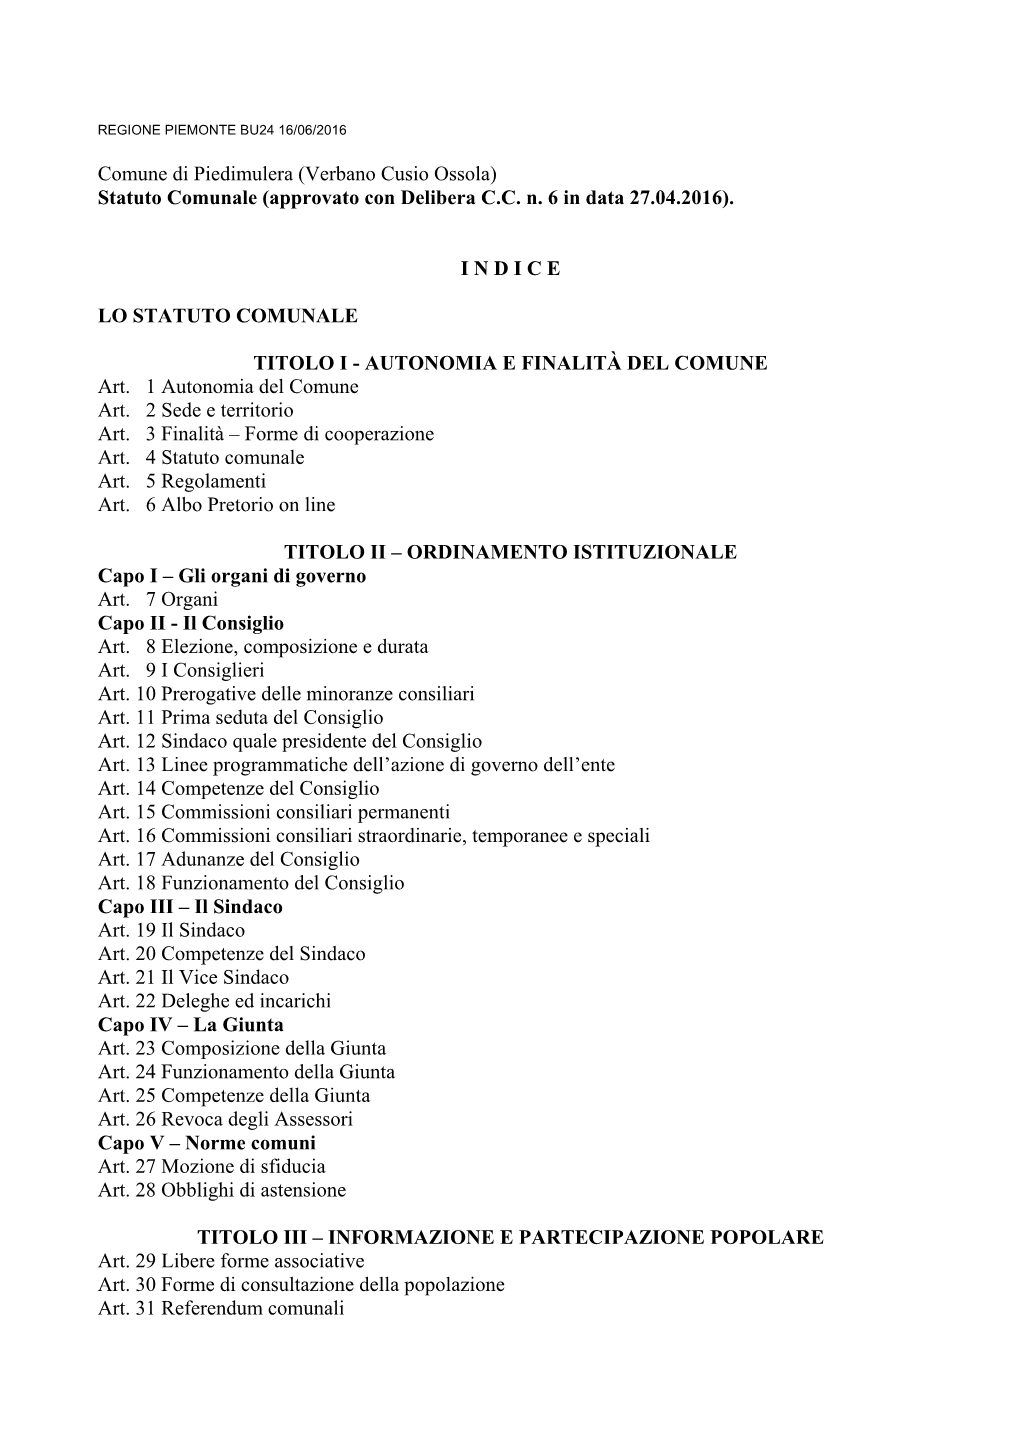 Comune Di Piedimulera (Verbano Cusio Ossola) Statuto Comunale (Approvato Con Delibera C.C